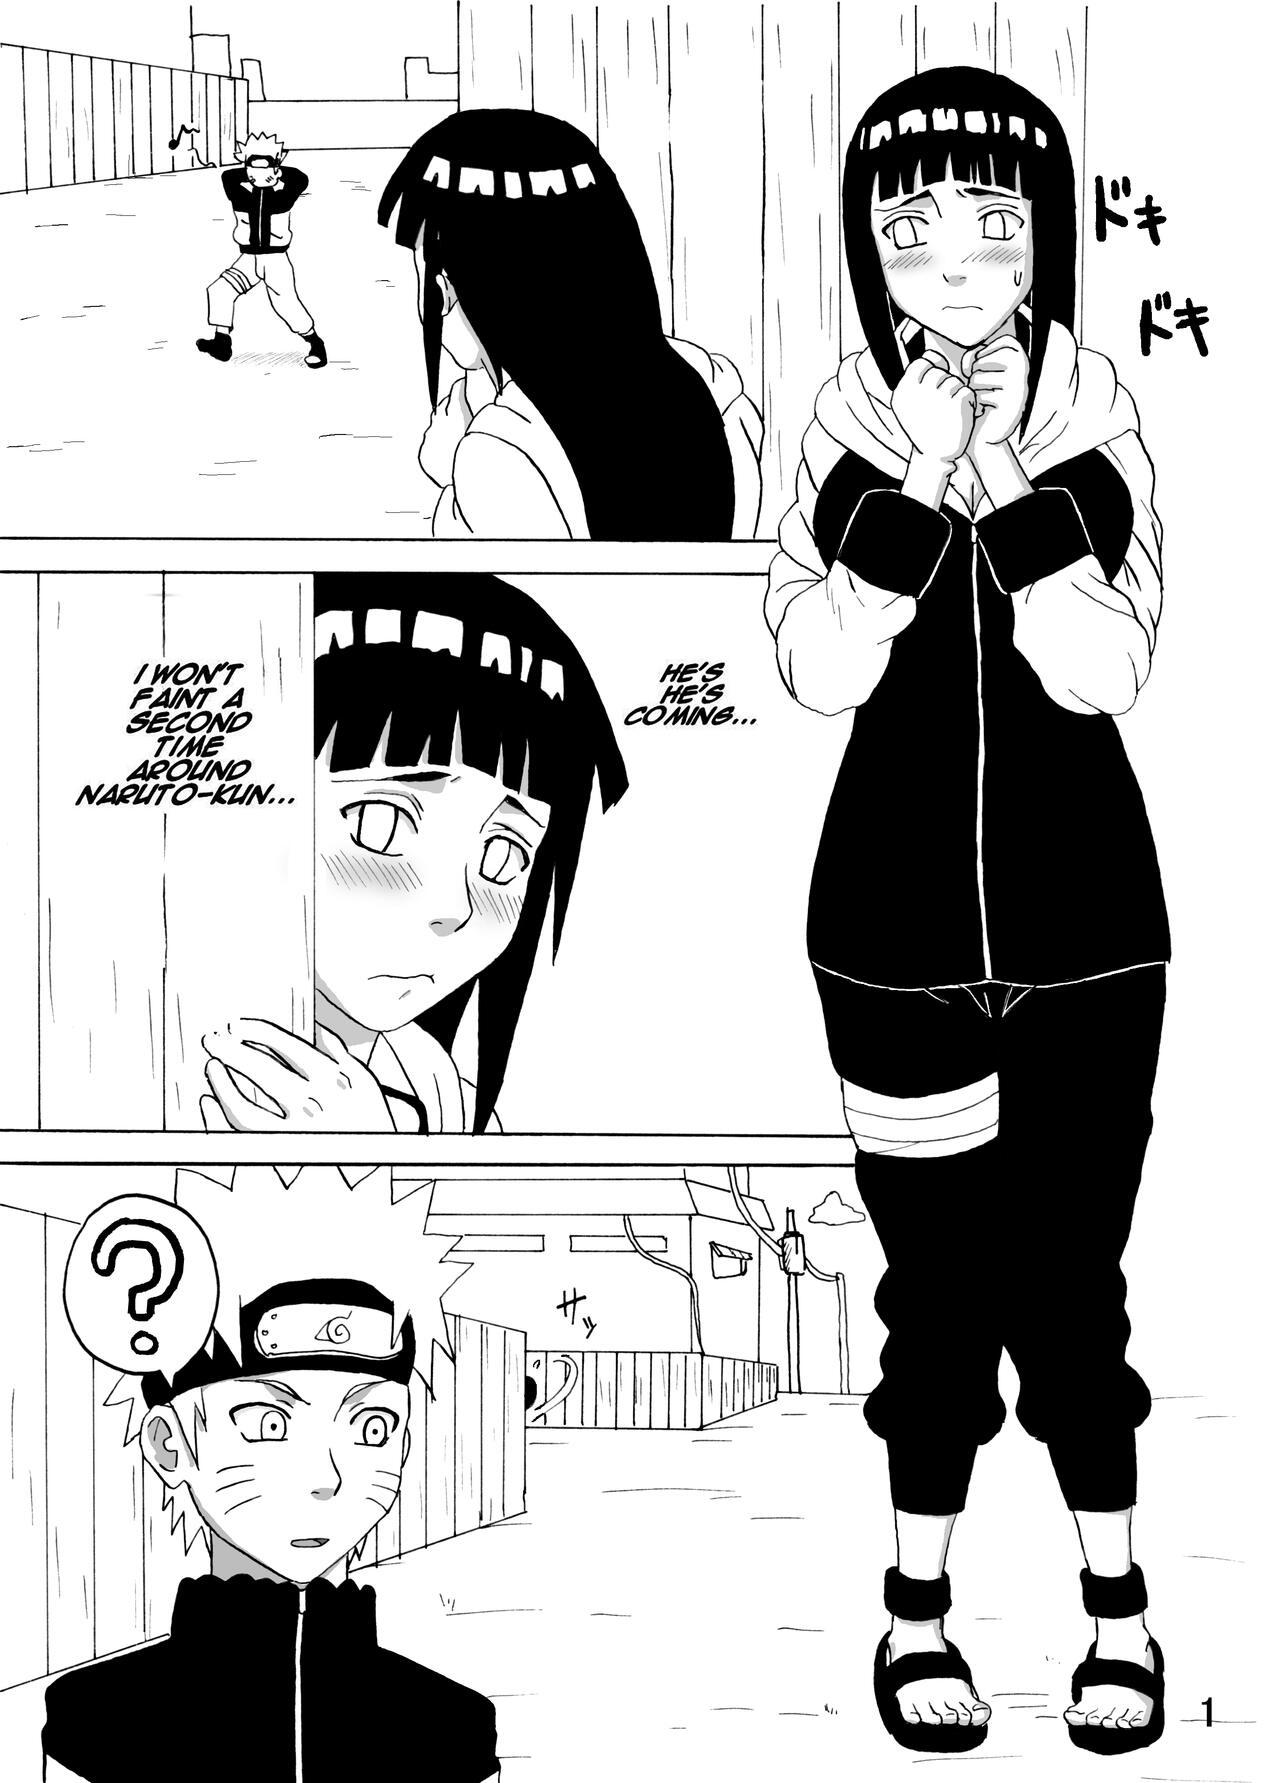 Gayfuck Hinata Ganbaru! | Hinata Fight! - Naruto Hottie - Page 2